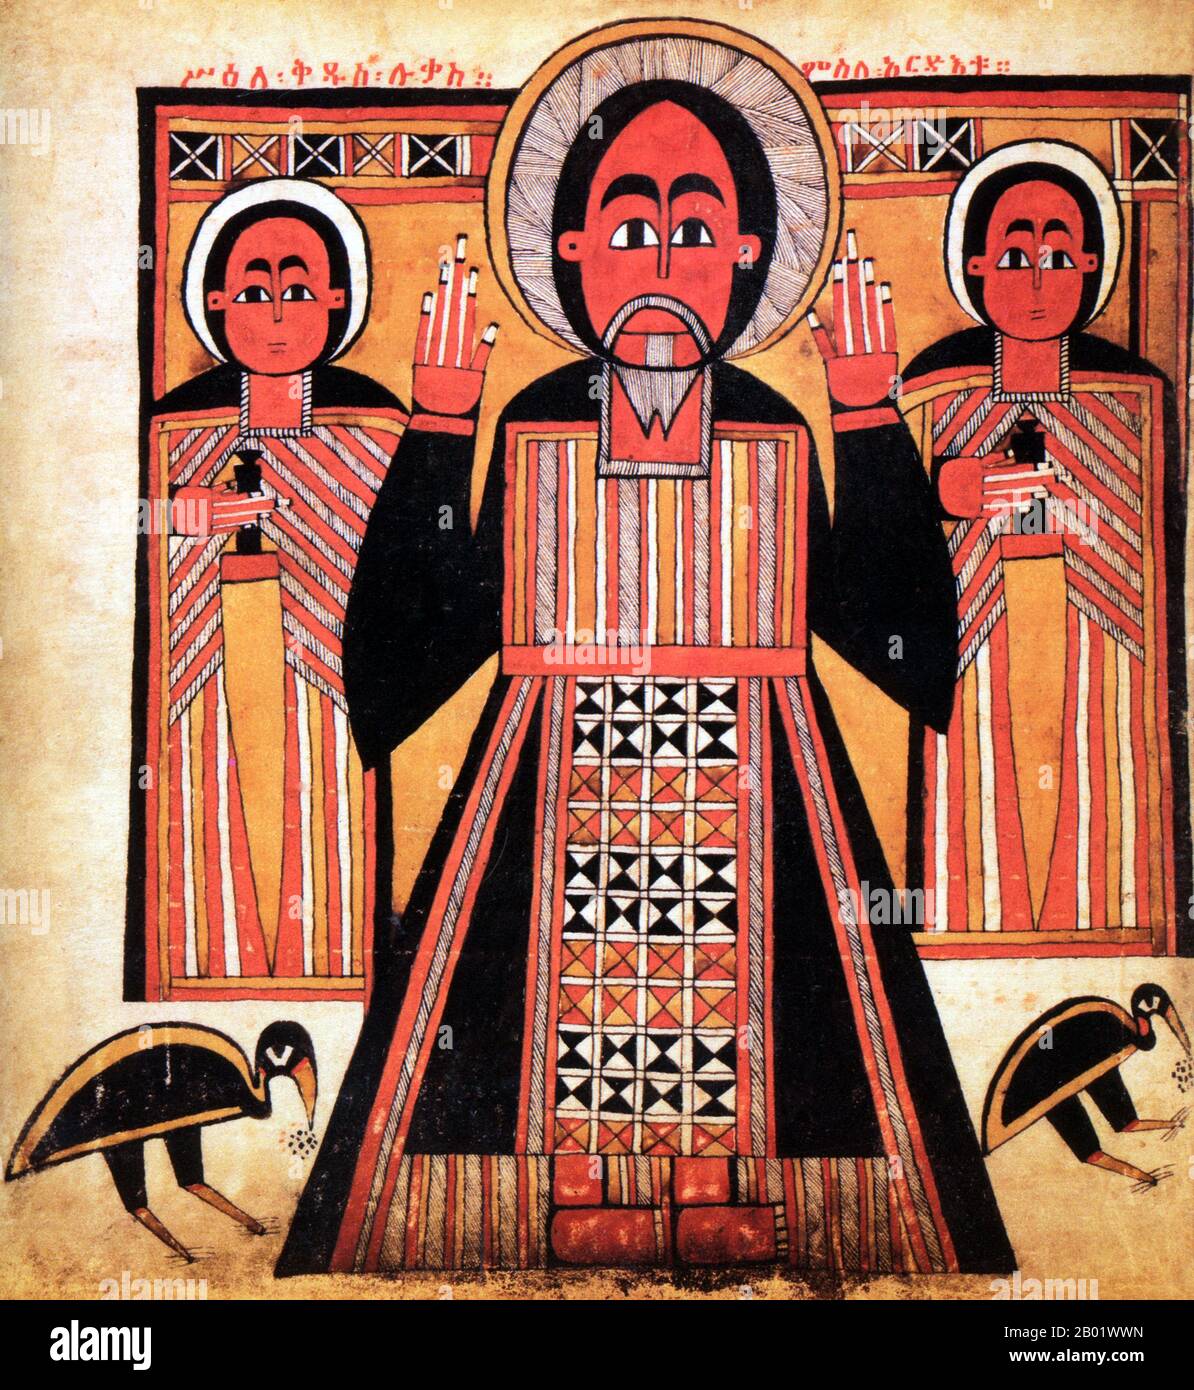 Ethiopie : Saint Luc l'Evangéliste, accompagné de deux disciples. Peinture sur parchemin, début du XVIIe siècle. Le christianisme en Éthiopie date du Ier siècle de notre ère, et cette longue tradition rend l'Éthiopie unique parmi les pays d'Afrique subsaharienne. Le christianisme dans ce pays est divisé en plusieurs groupes. La plus grande et la plus ancienne est l'Église orthodoxe éthiopienne Tewahedo qui est une église orthodoxe orientale en Éthiopie qui faisait partie de l'Église copte orthodoxe jusqu'en 1959, date à laquelle elle a obtenu son propre patriarche par le pape copte orthodoxe d'Alexandrie et le patriarche de toute l'Afrique Cyril VI. Banque D'Images